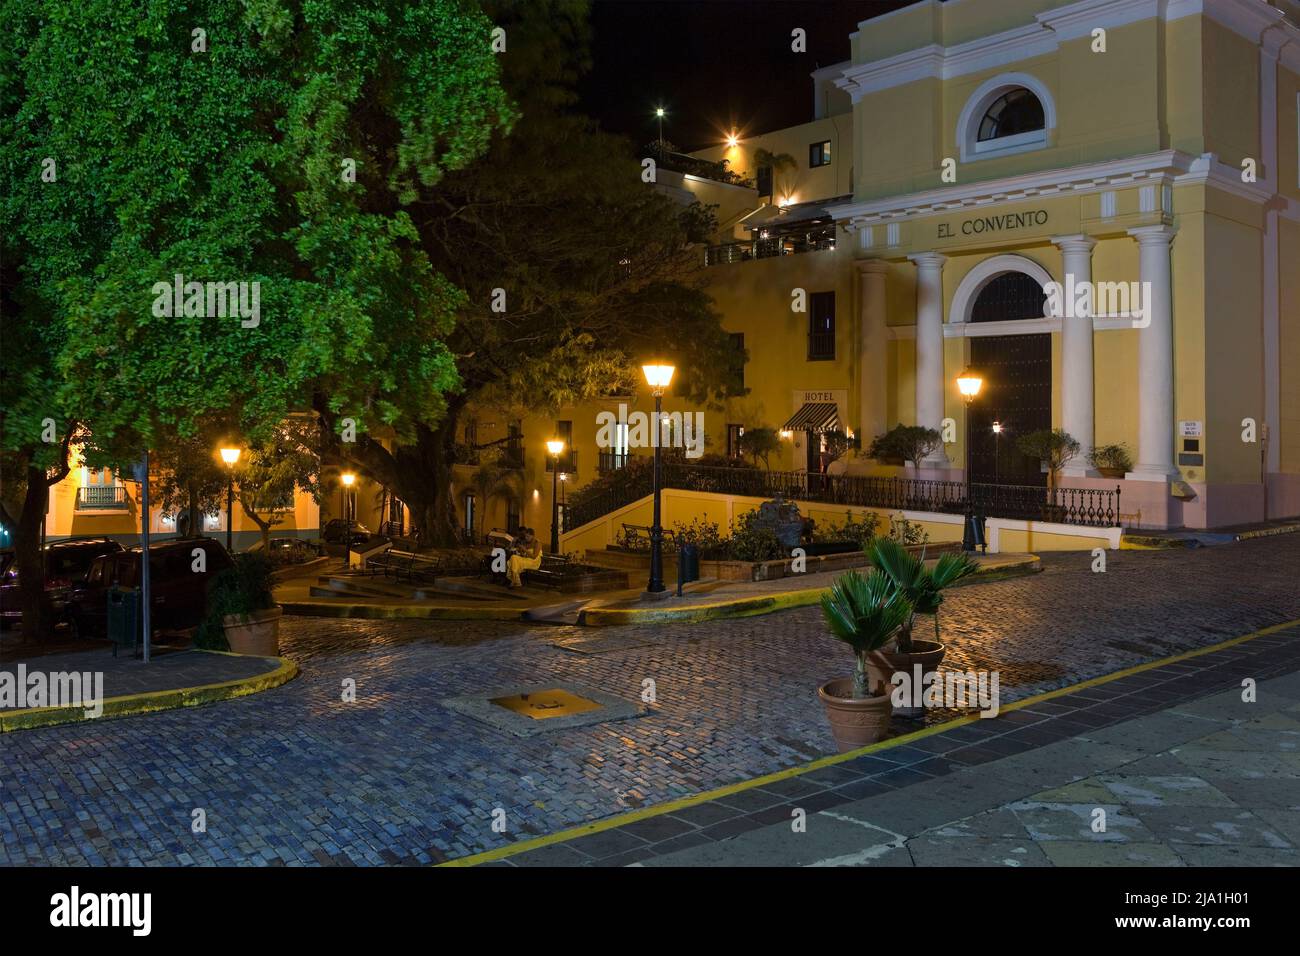 El Convento Hotel Old San Juan Puerto Rico H Stock Photo